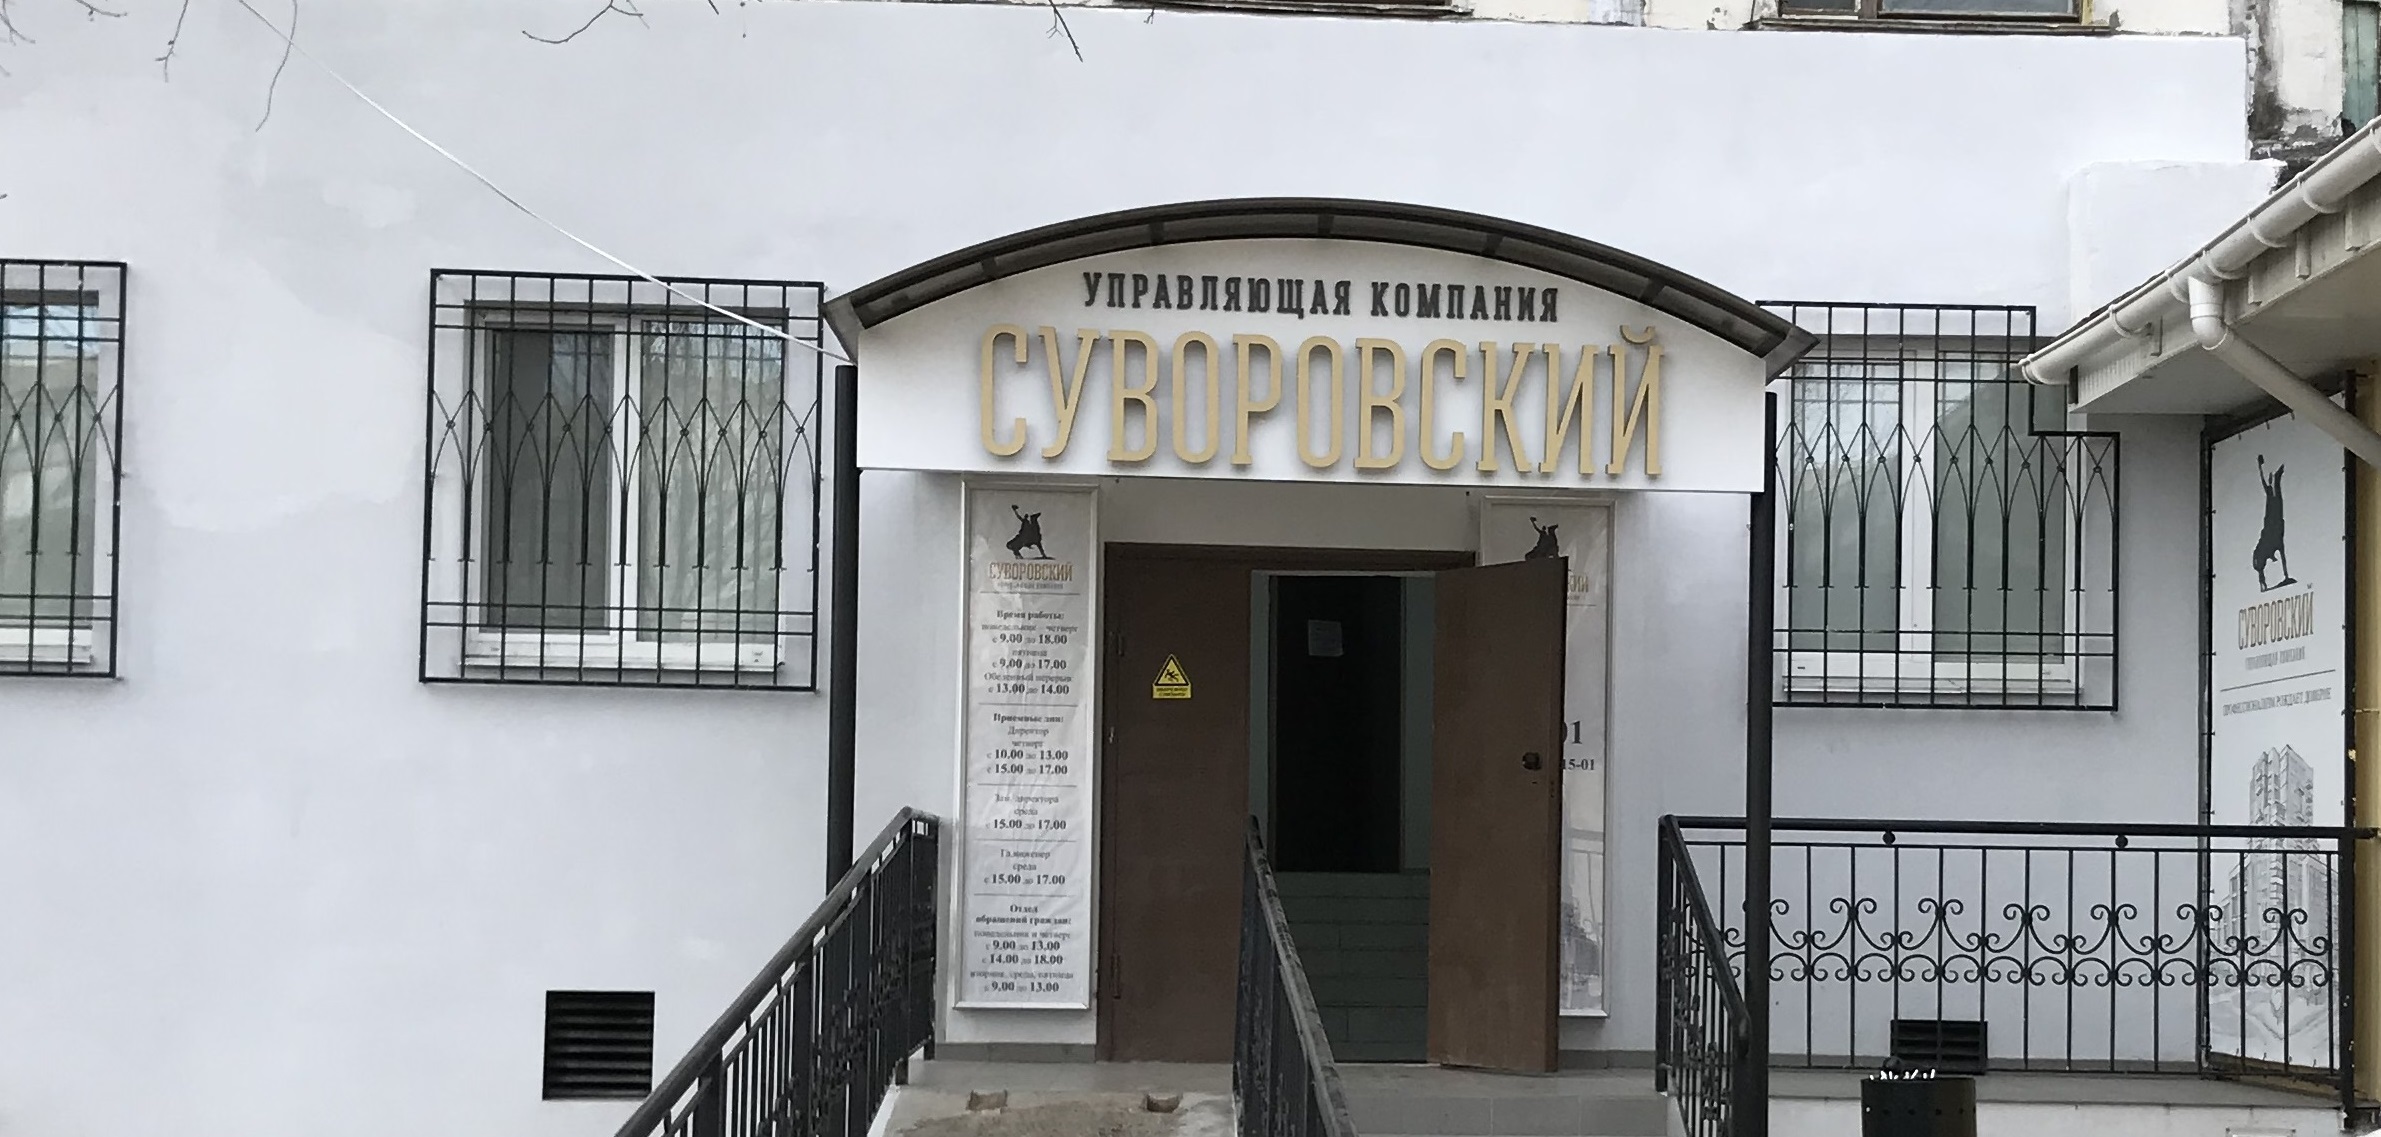 В УК Суворовский действует информационный центр.